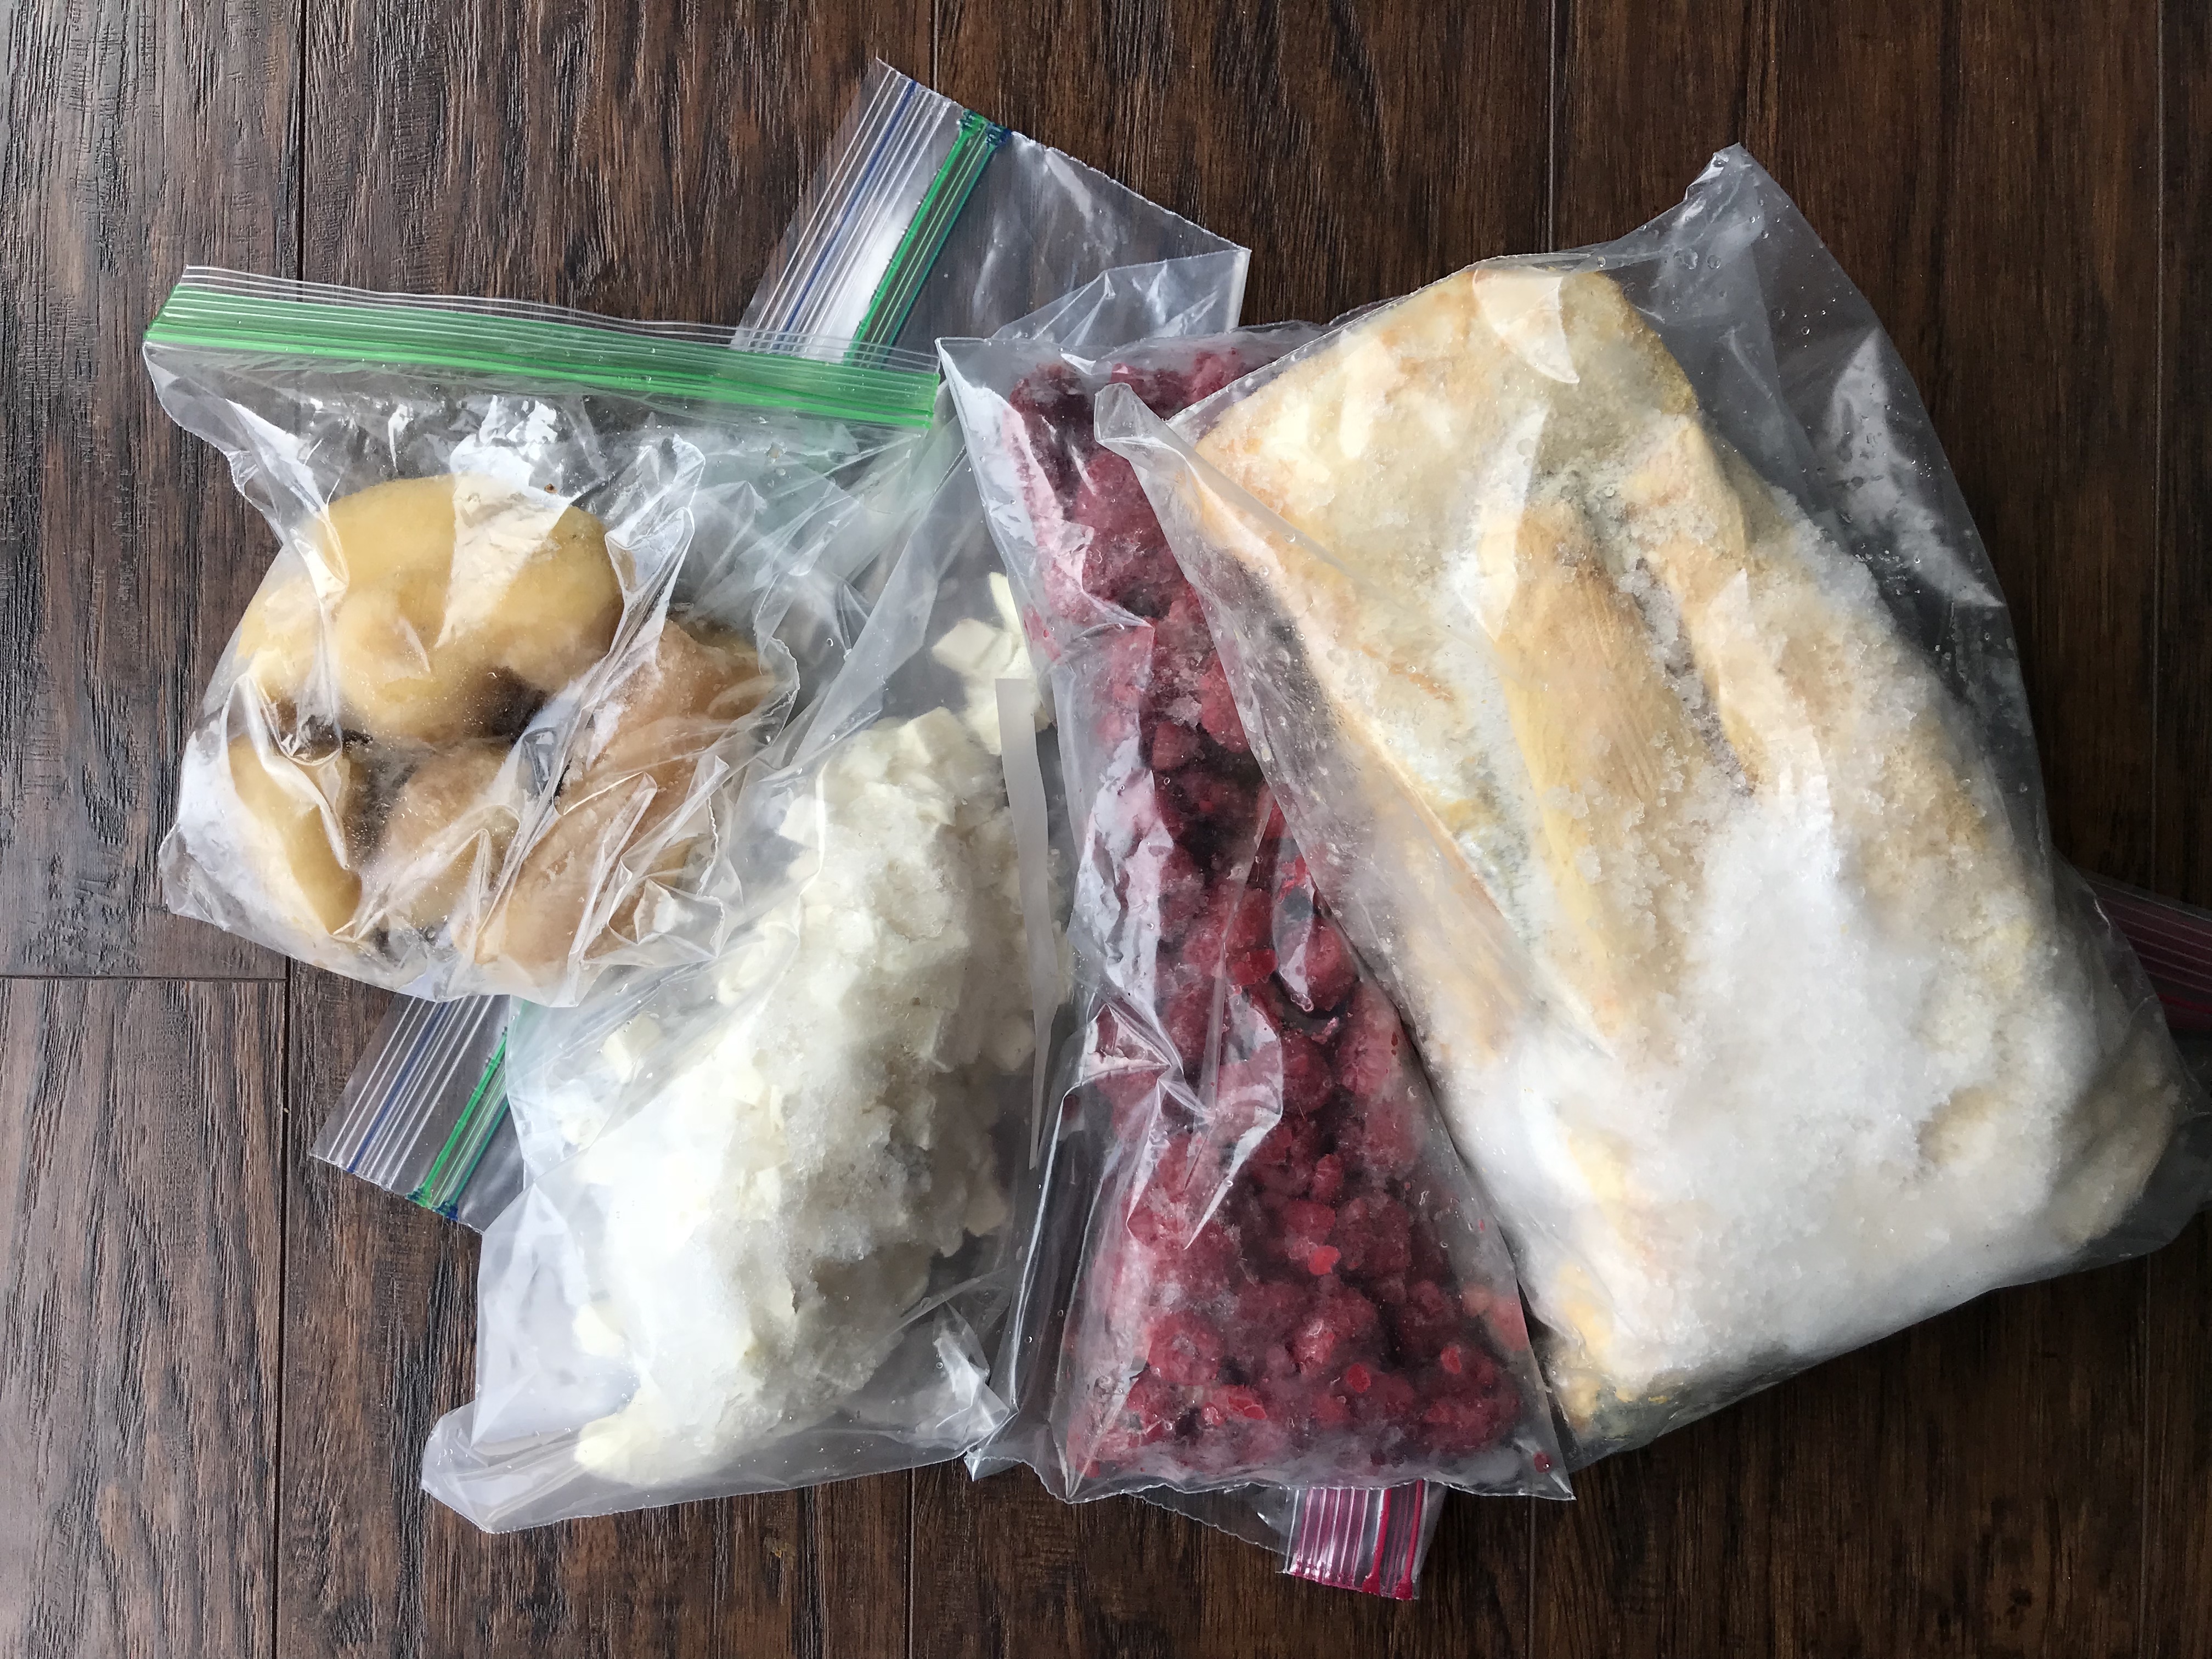 Freezer burned food stored in Zipper baggies